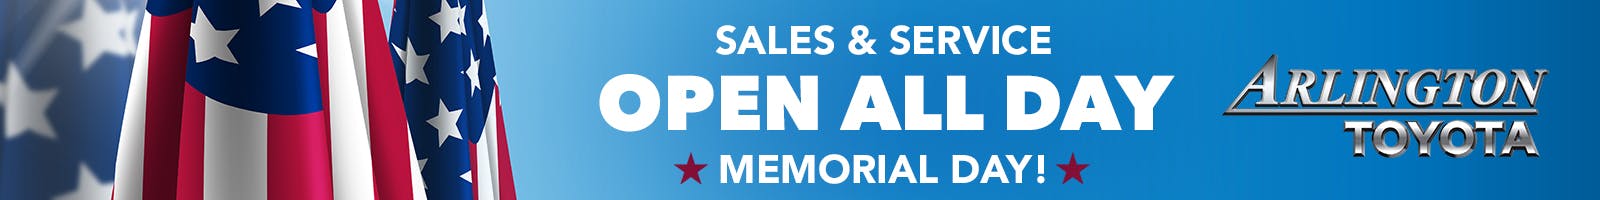 !Open Memorial Day | Arlington Toyota